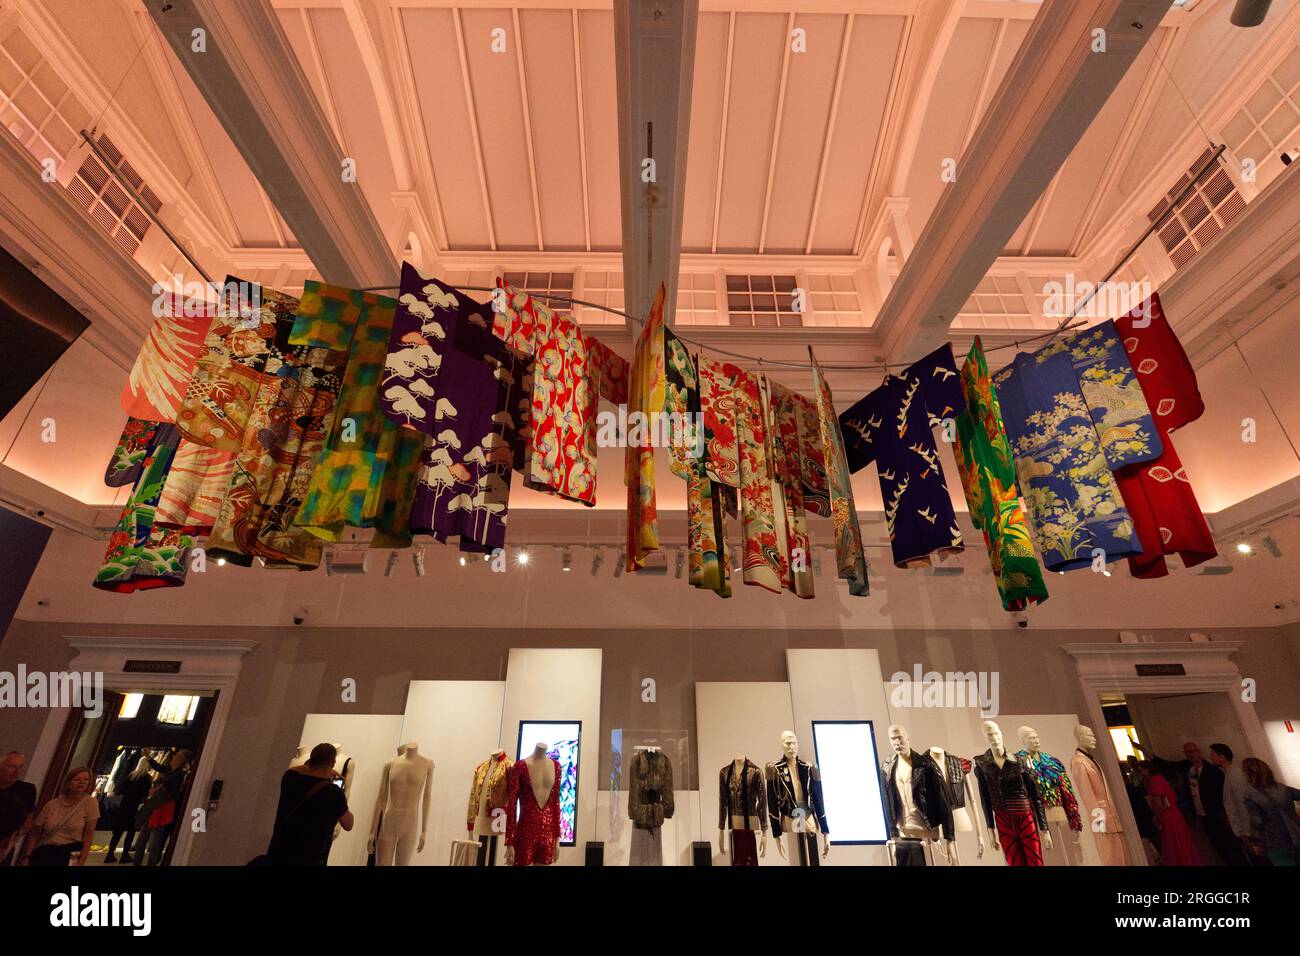 Kostüme und Kleidung - Auktion bei Sotheby's Freddie Mercury: A World of His Own Exhibition Stockfoto